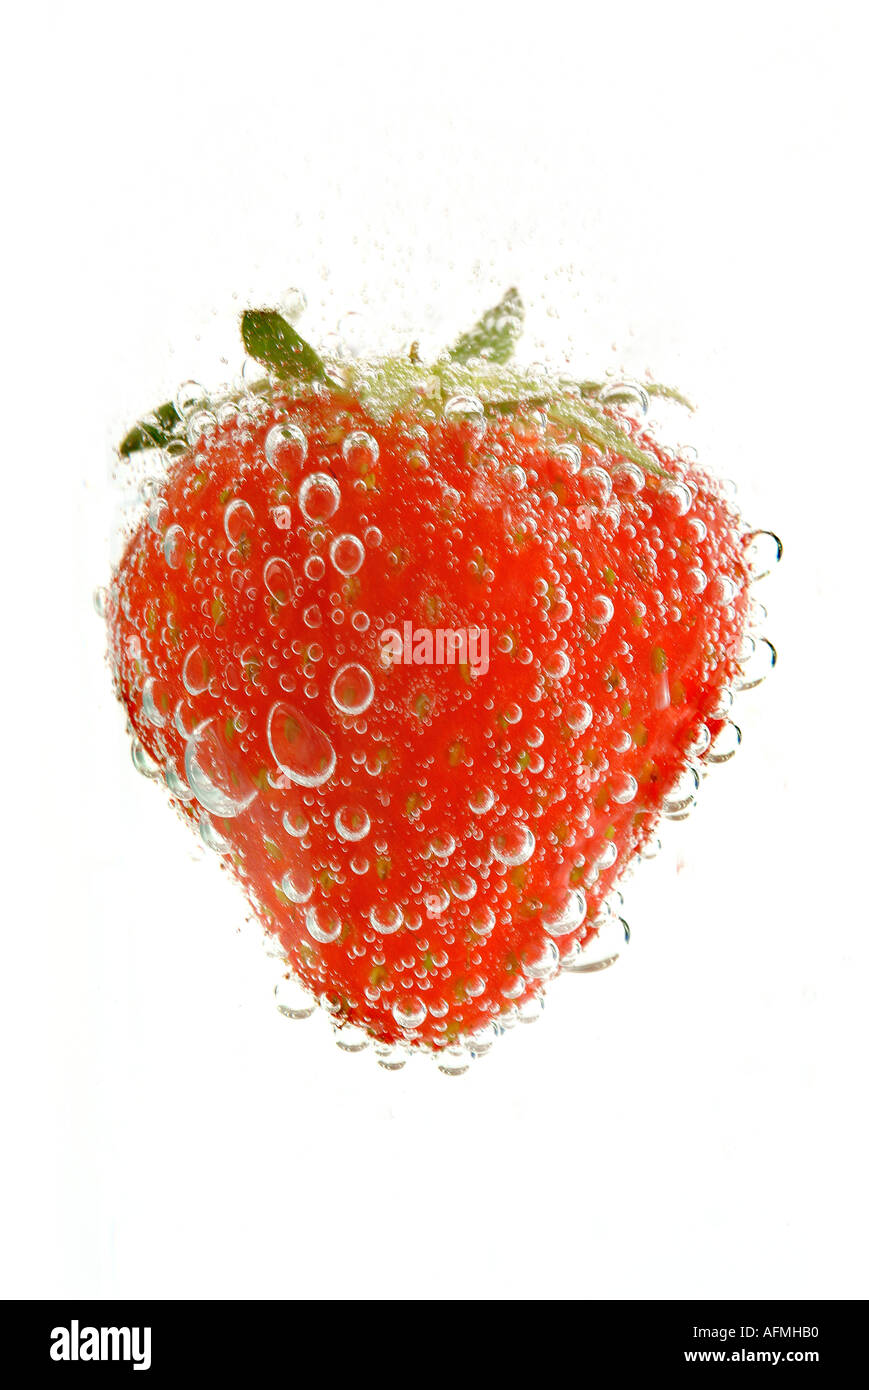 Strawberry Erdbeer Stock Photo